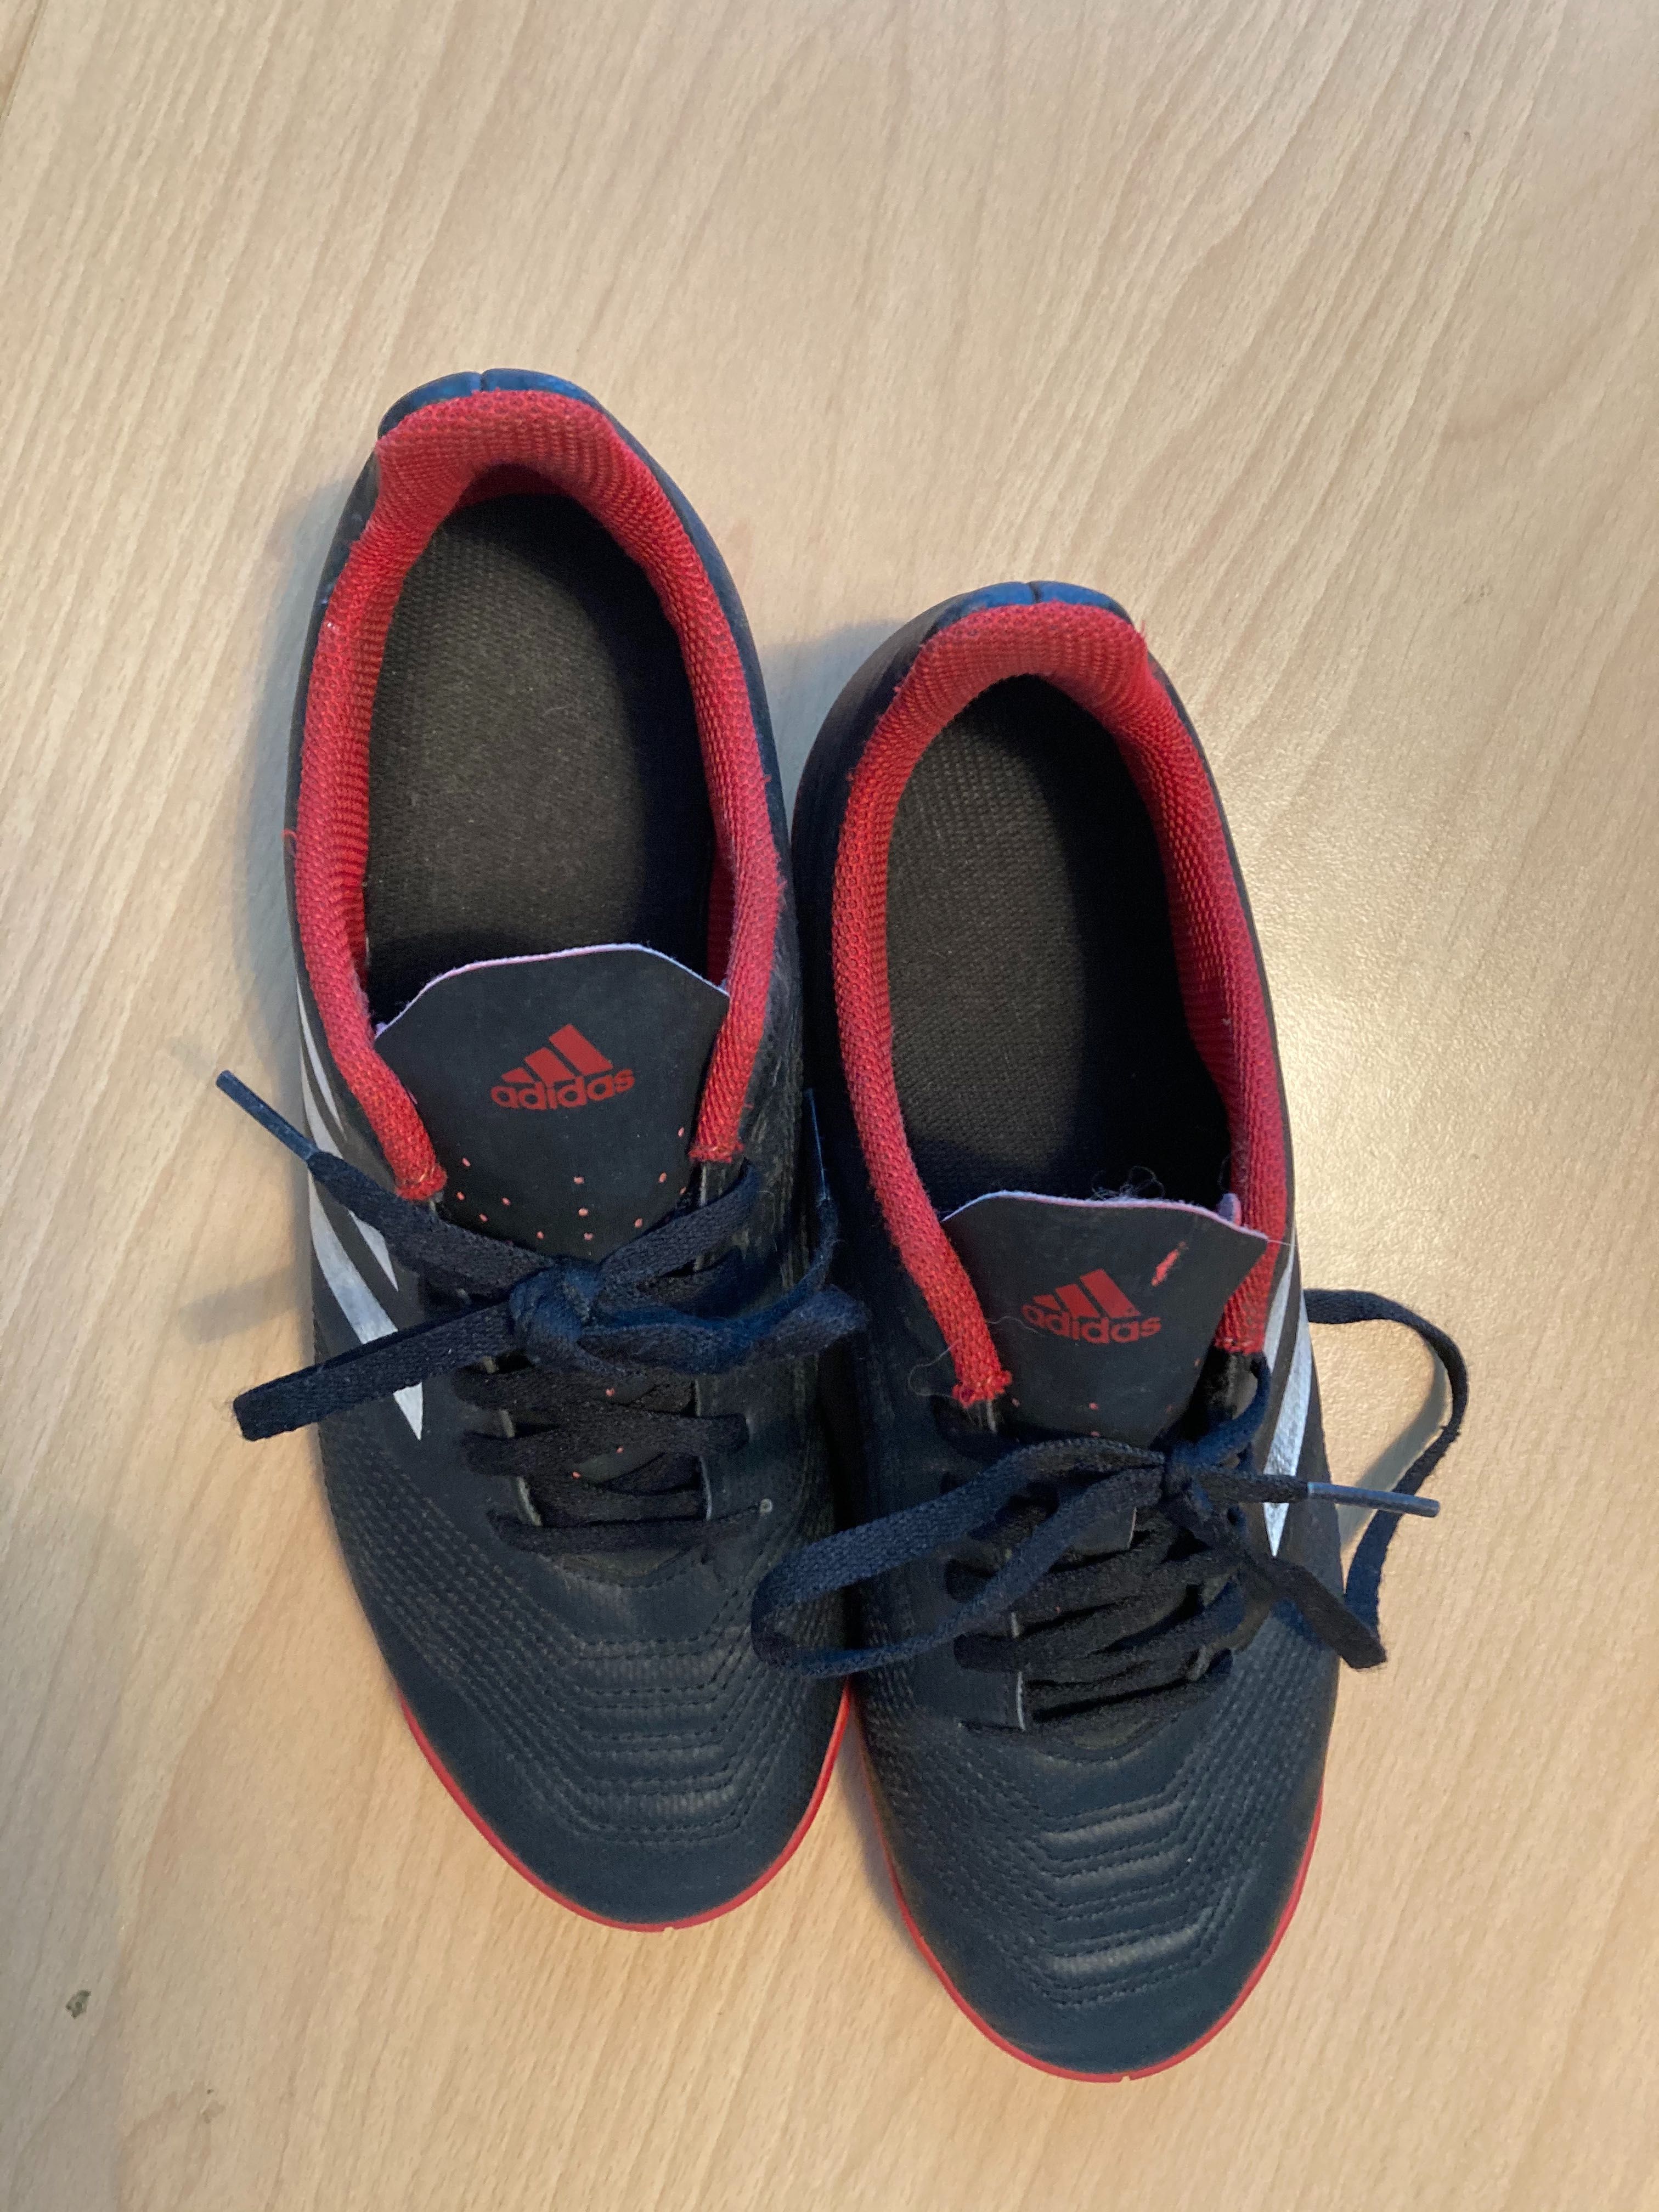 Buty piłkarskie halowe Adidas Predator nr 38 2/3, wkładka 23 cm